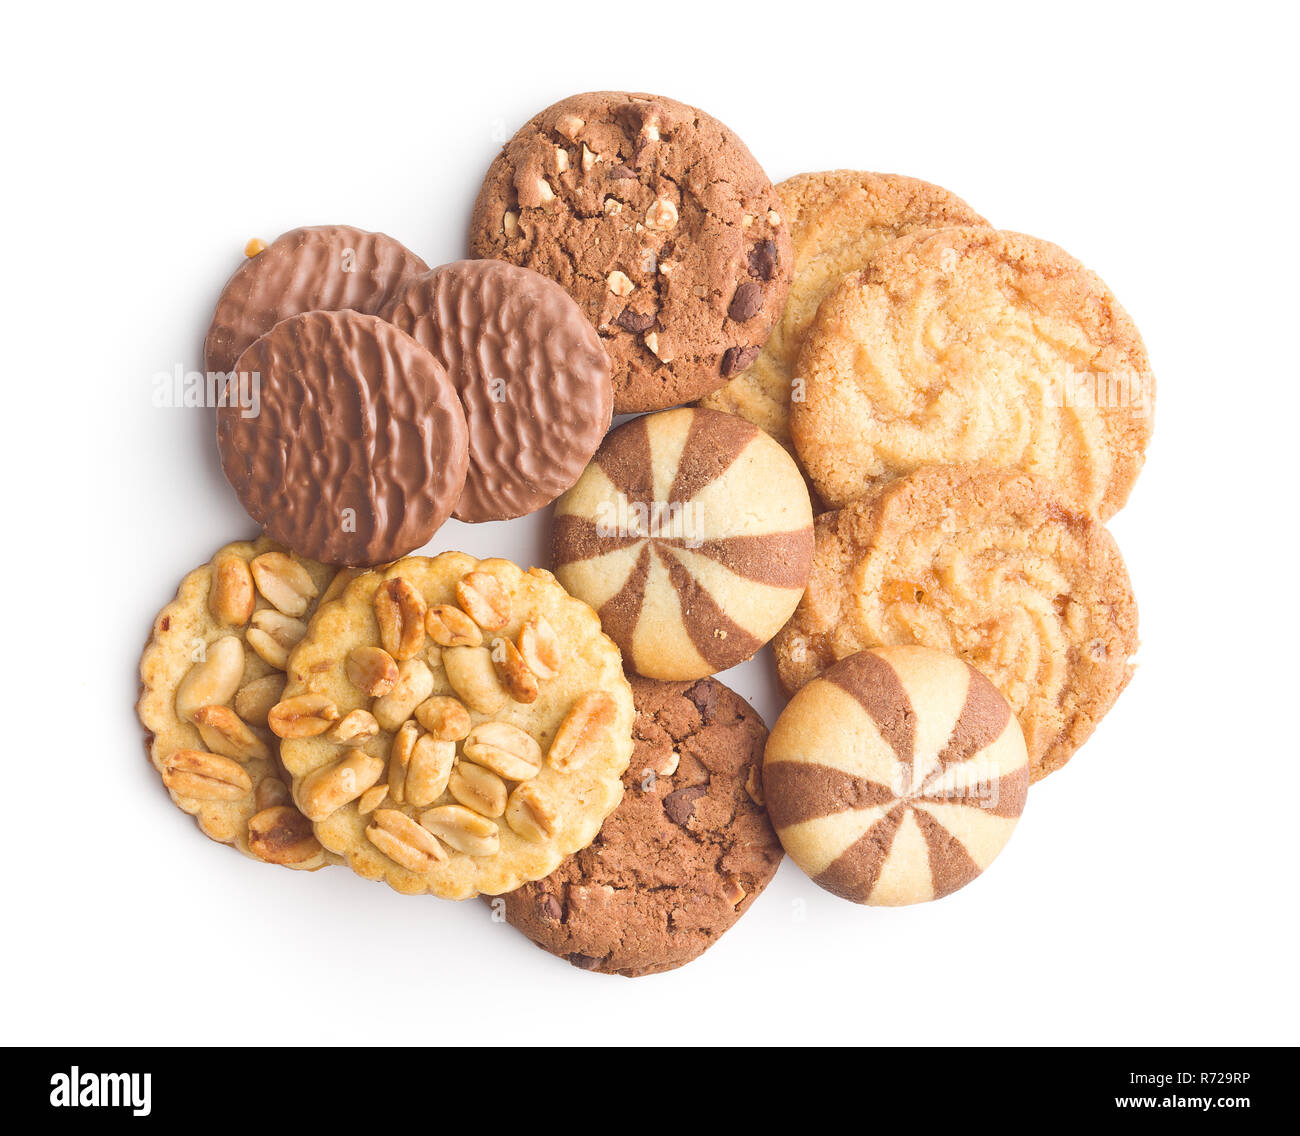 Verschiedene Arten von Cookies Stockfotografie - Alamy